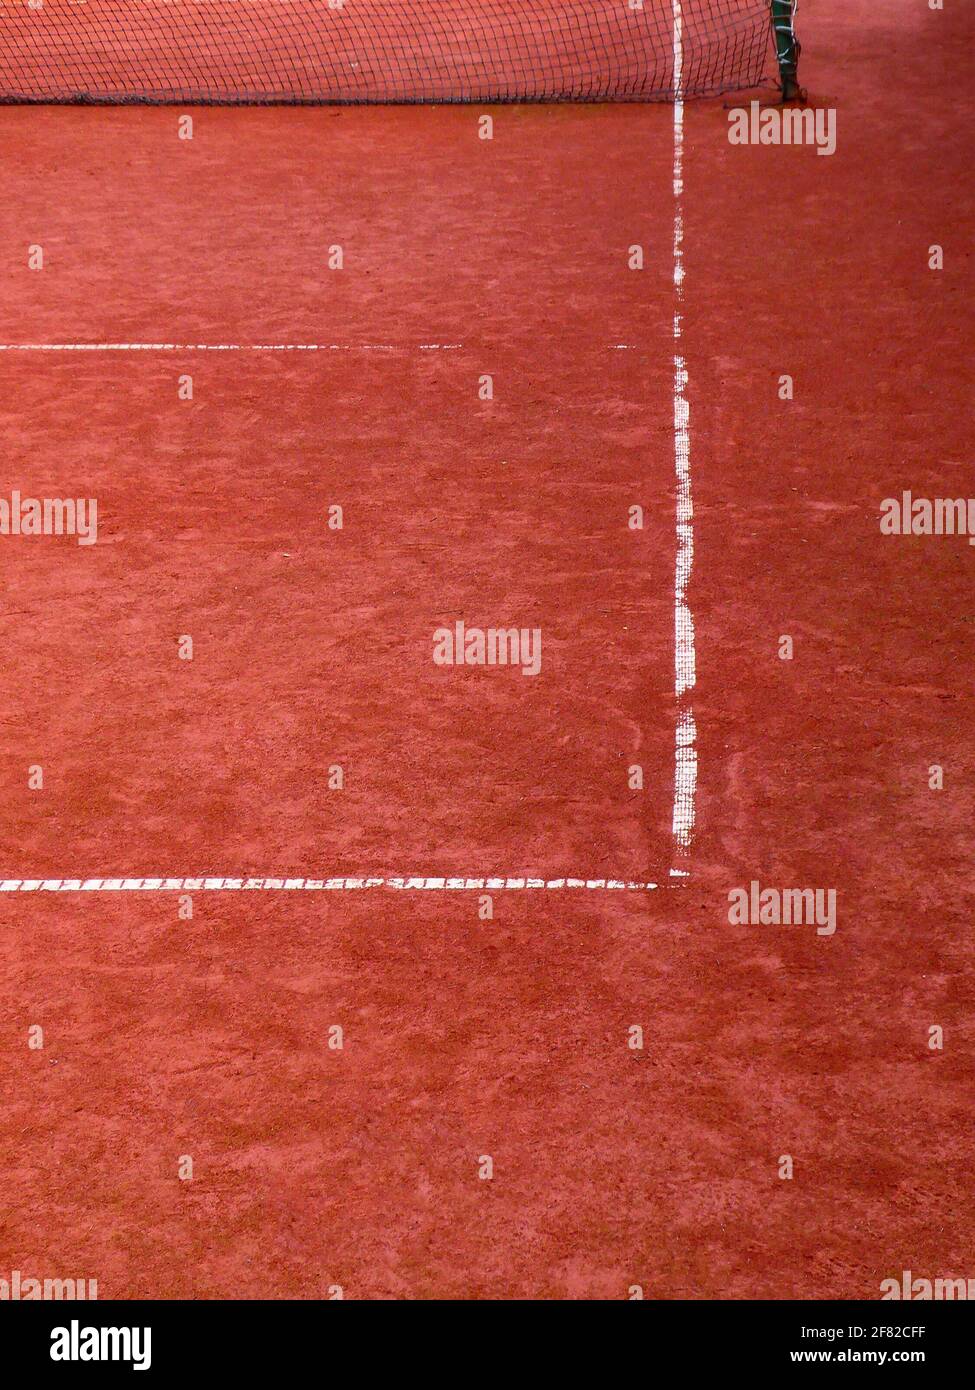 Un primo piano dell'angolo del tennis rosso campo di argilla e rete Foto Stock